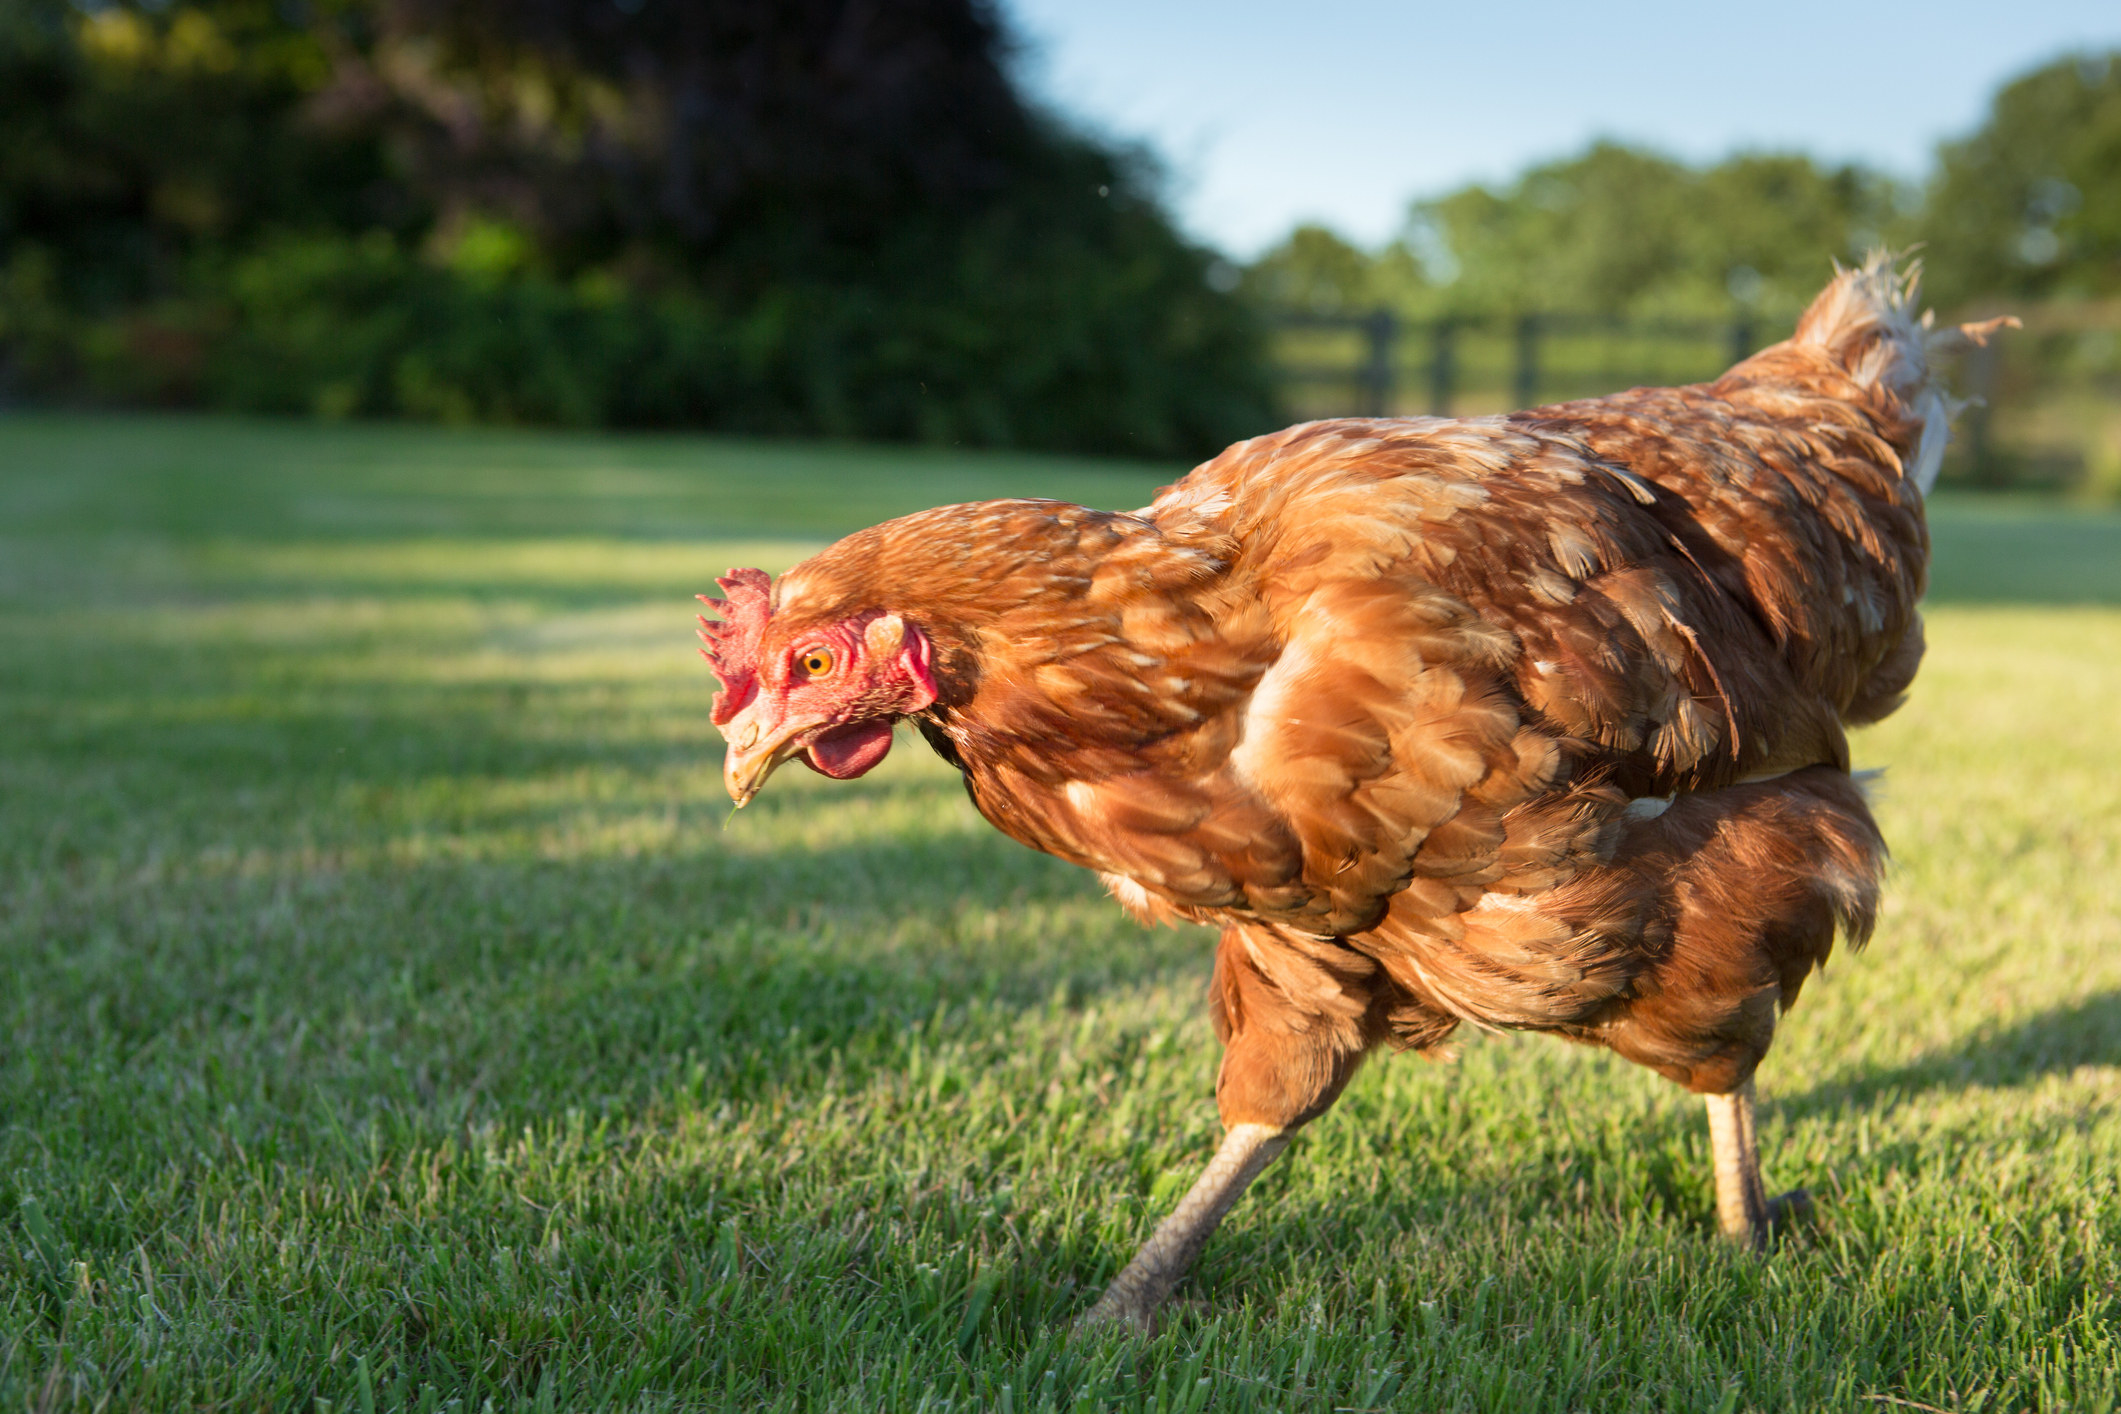 A chicken walking on grass